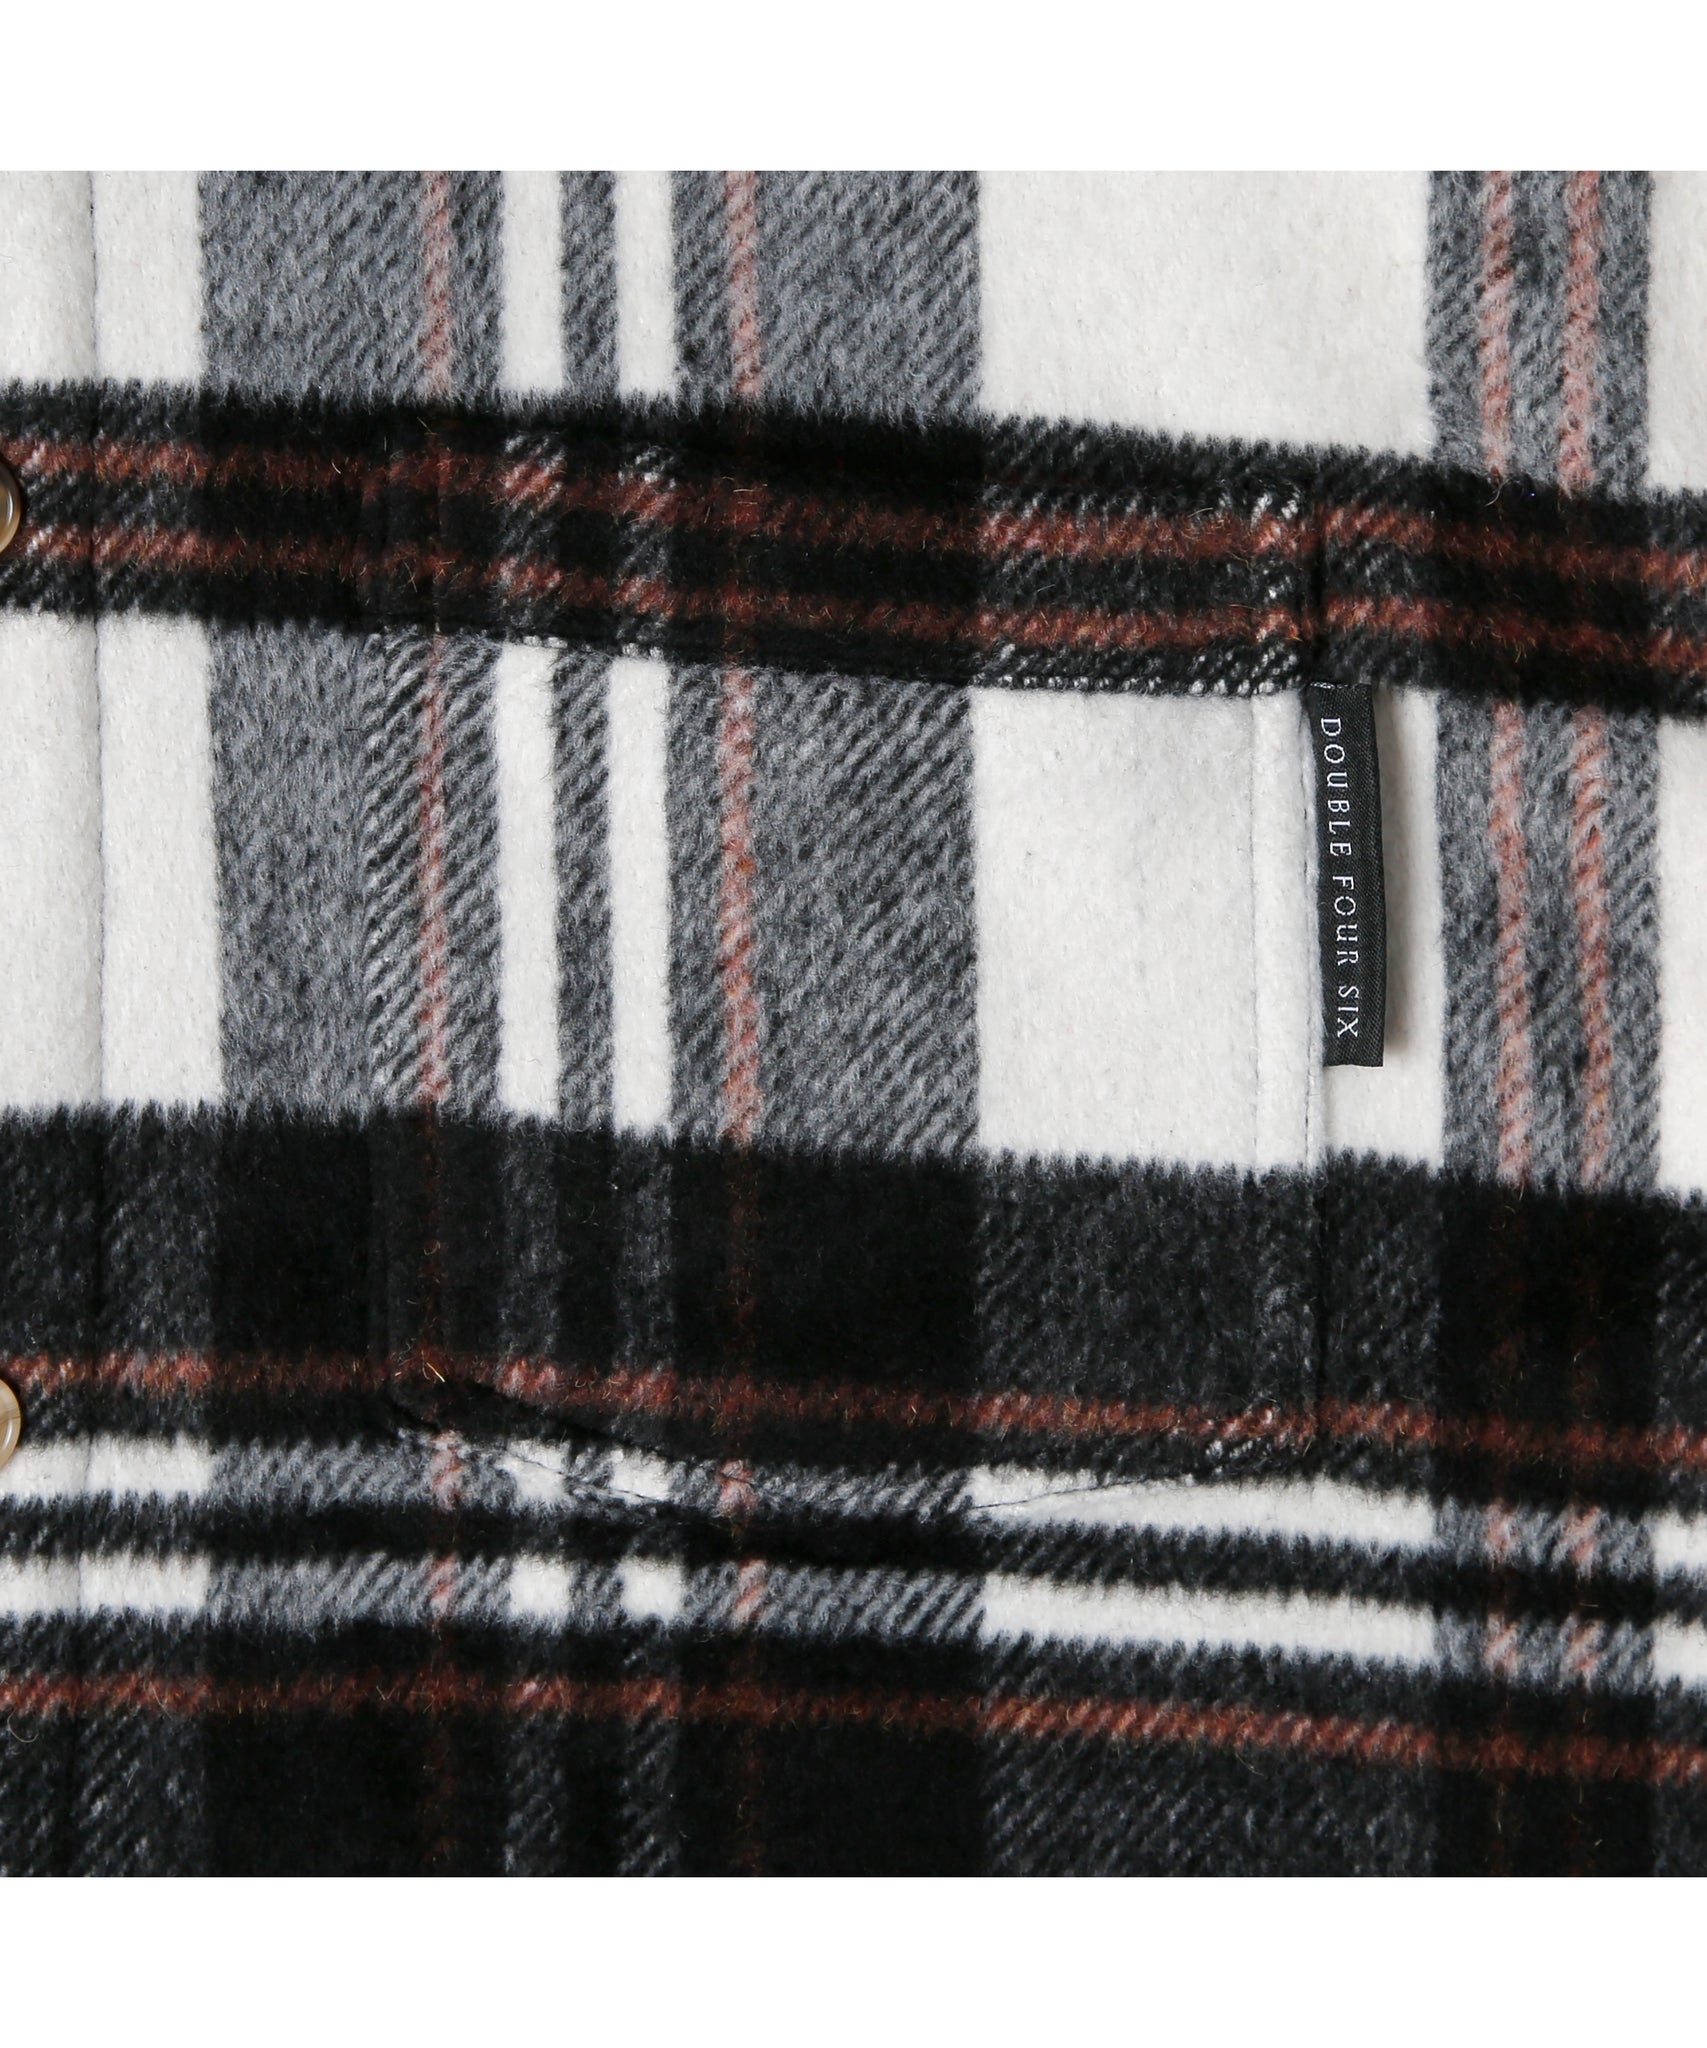 数量限定商品】Checkered Shirt Hoodie Black Check – 446 - DOUBLE ...